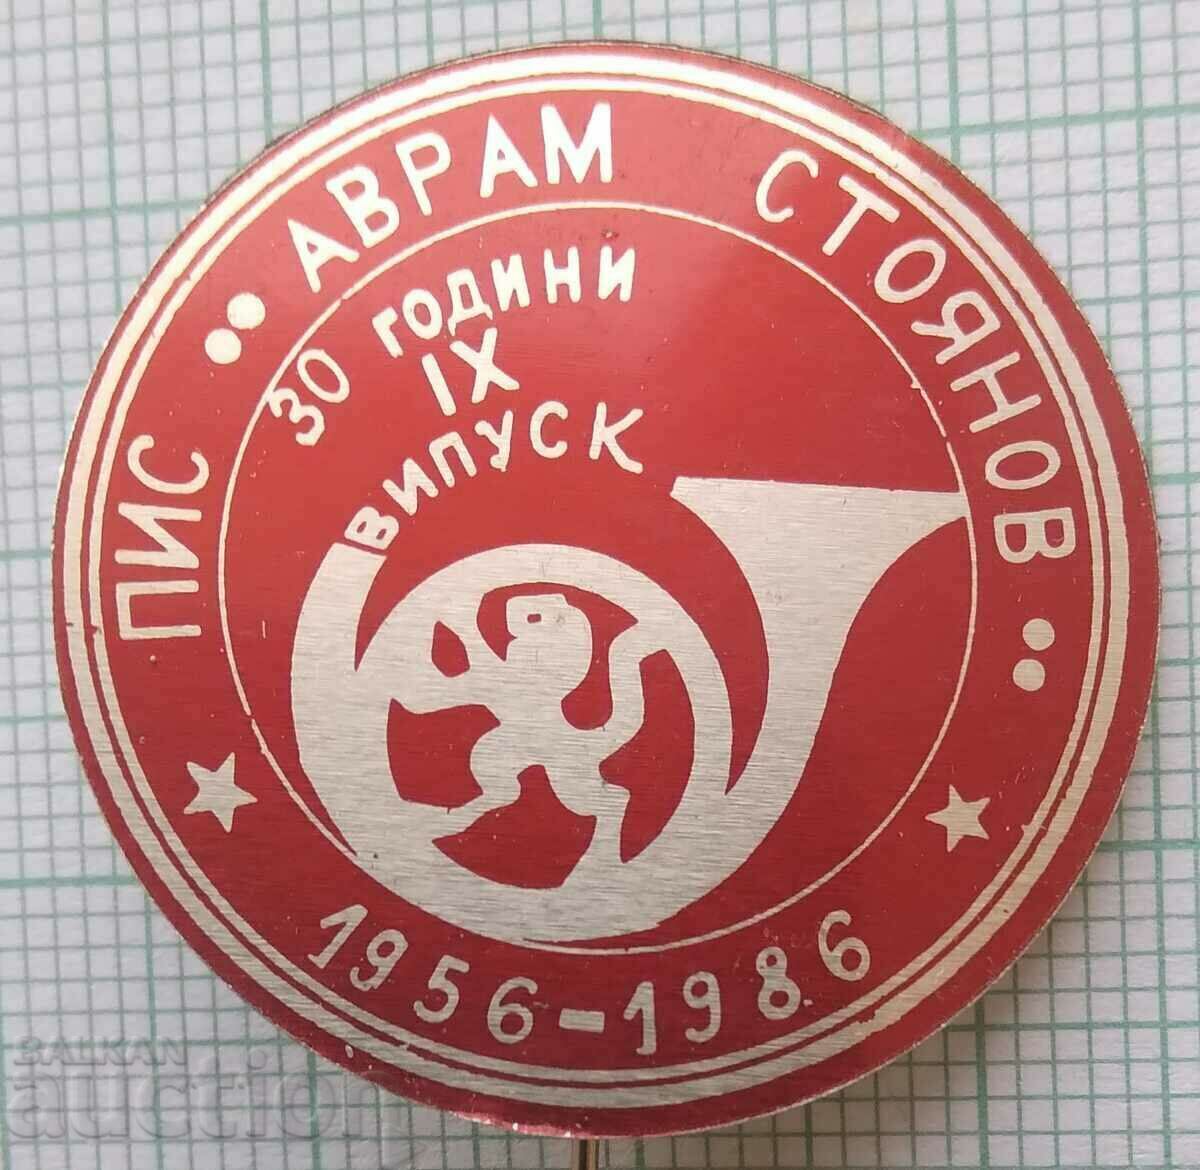 14465 Ημι-ανώτερο Ινστιτούτο Κοιν. Avram Stoyanov - 30 χρόνια PIS